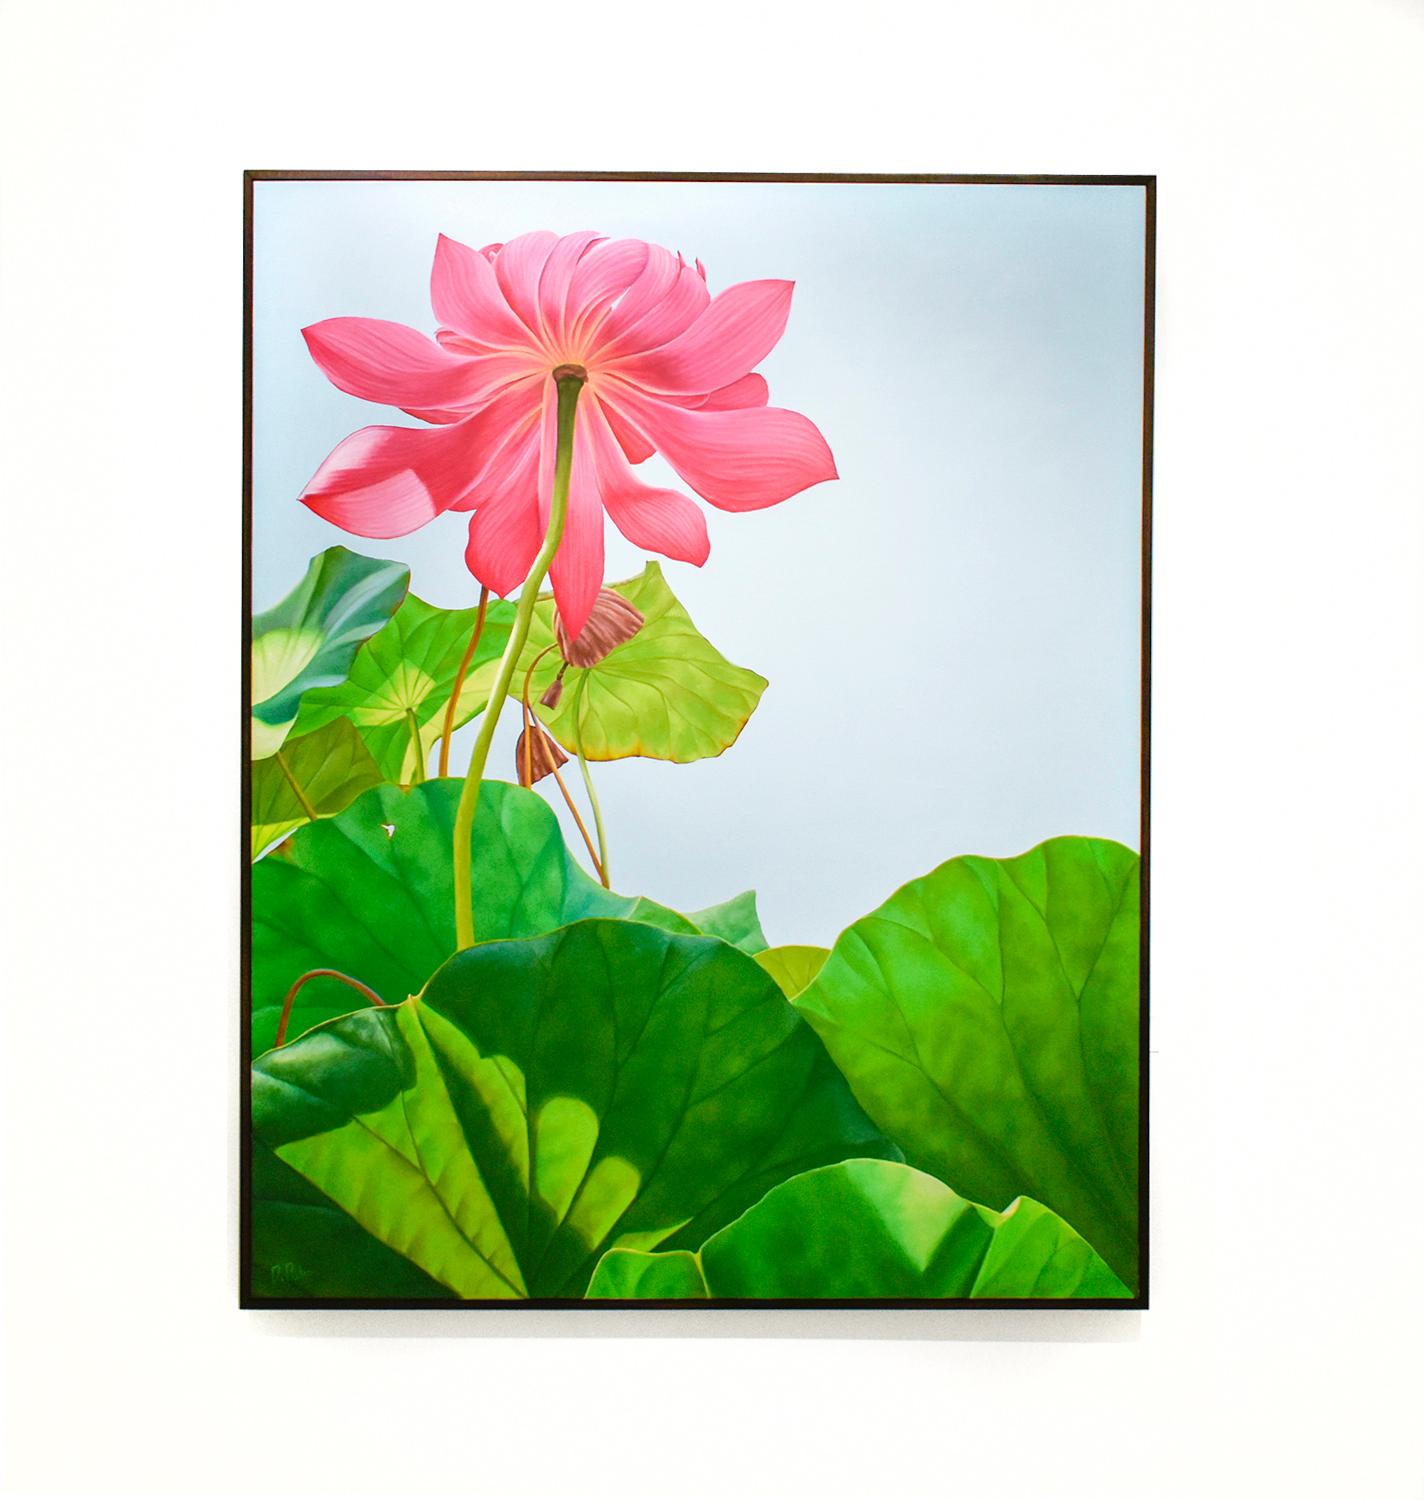 Lotus 25: Fotorealistisches Stillleben mit rosa Blume und grünen Blättern auf blauem Grund – Painting von Frank DePietro